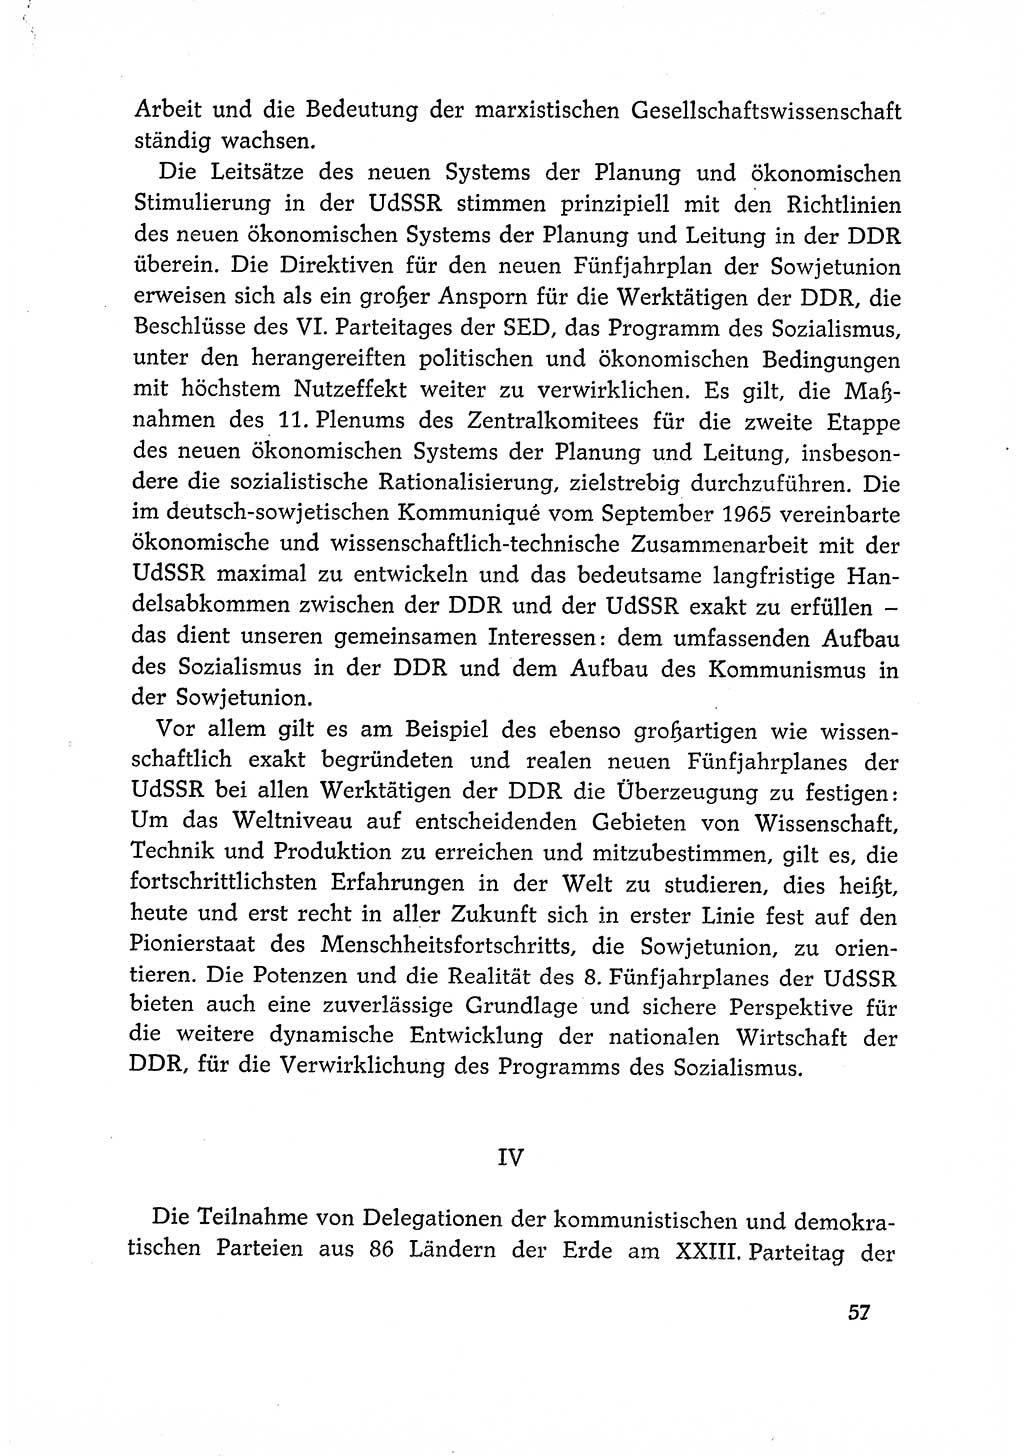 Dokumente der Sozialistischen Einheitspartei Deutschlands (SED) [Deutsche Demokratische Republik (DDR)] 1966-1967, Seite 57 (Dok. SED DDR 1966-1967, S. 57)